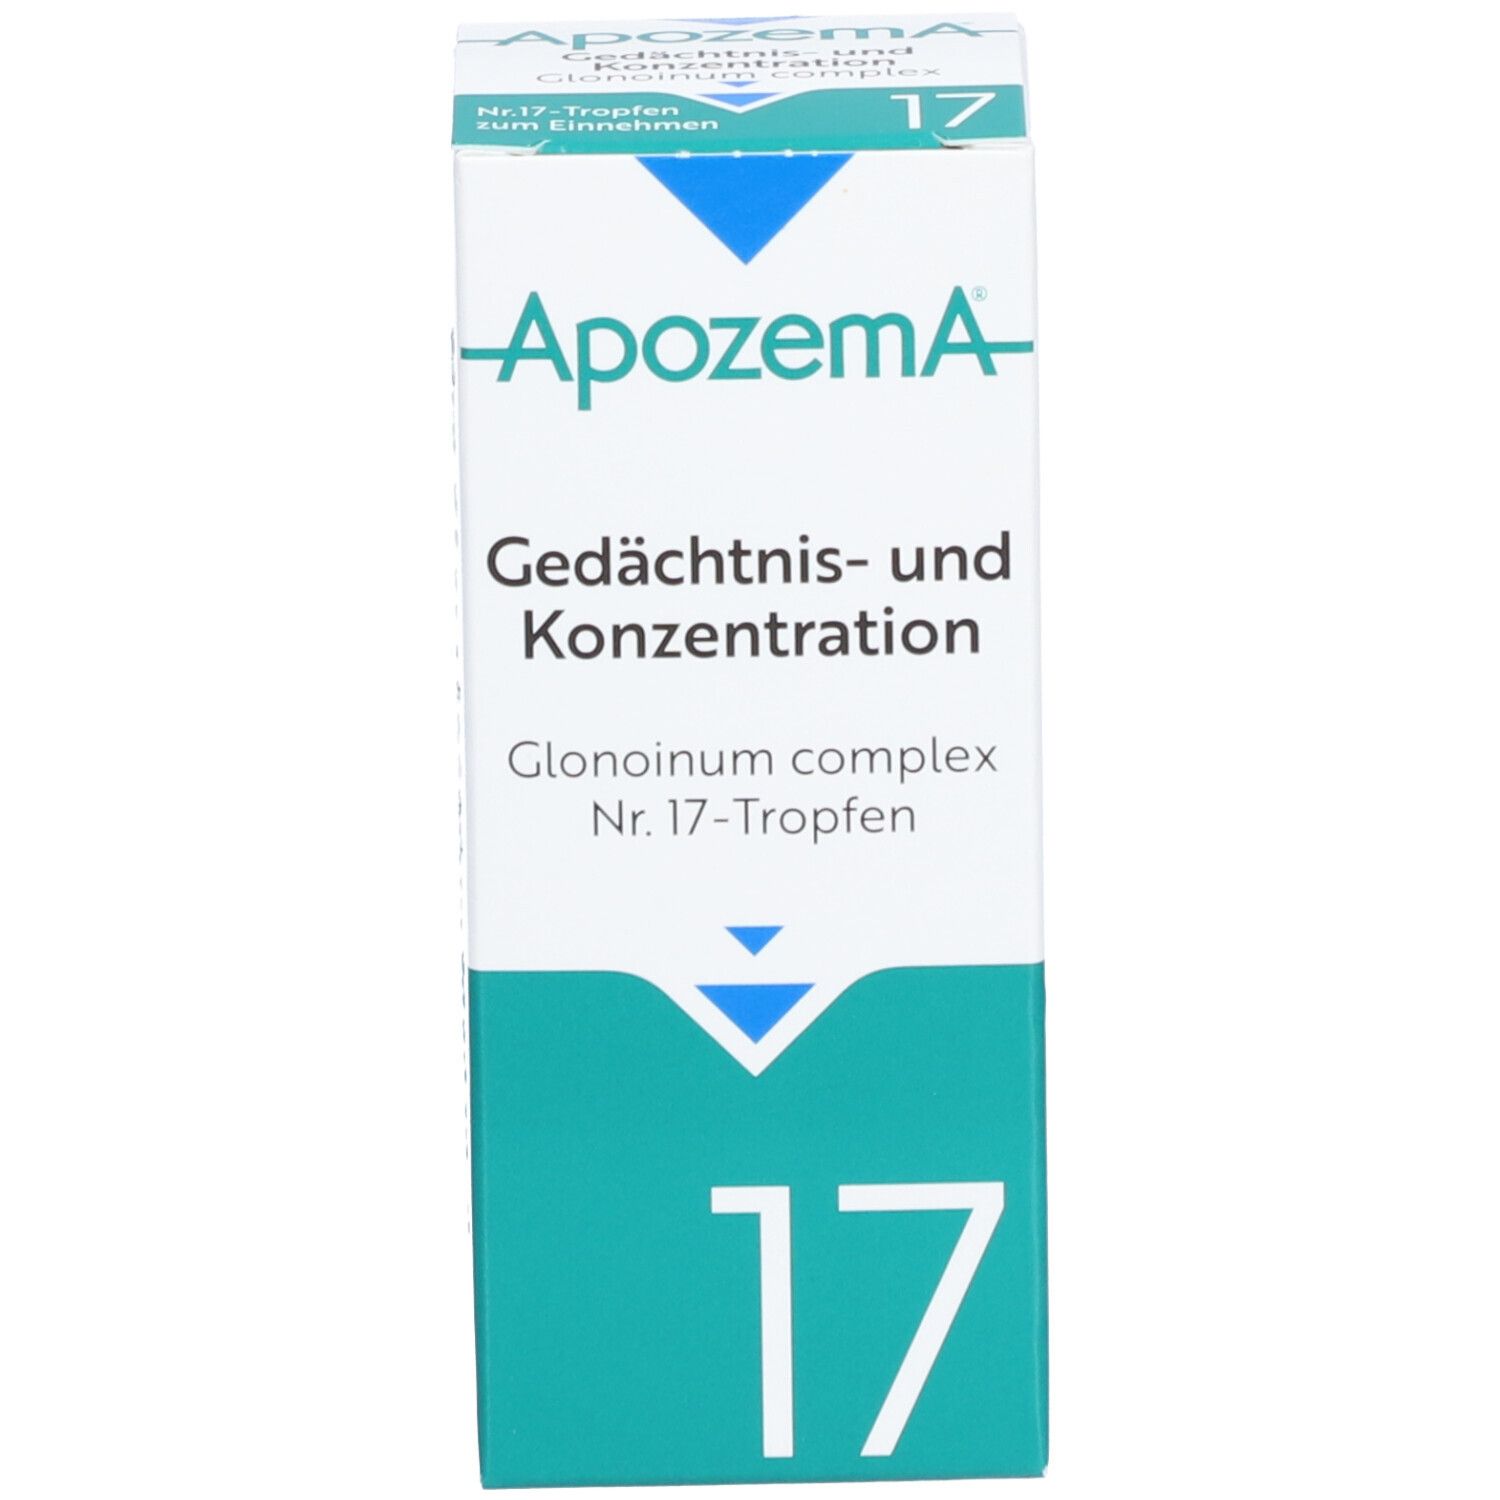 APOZEMA® Gedächtnis- und Konzentrations-Tropfen Nr. 17